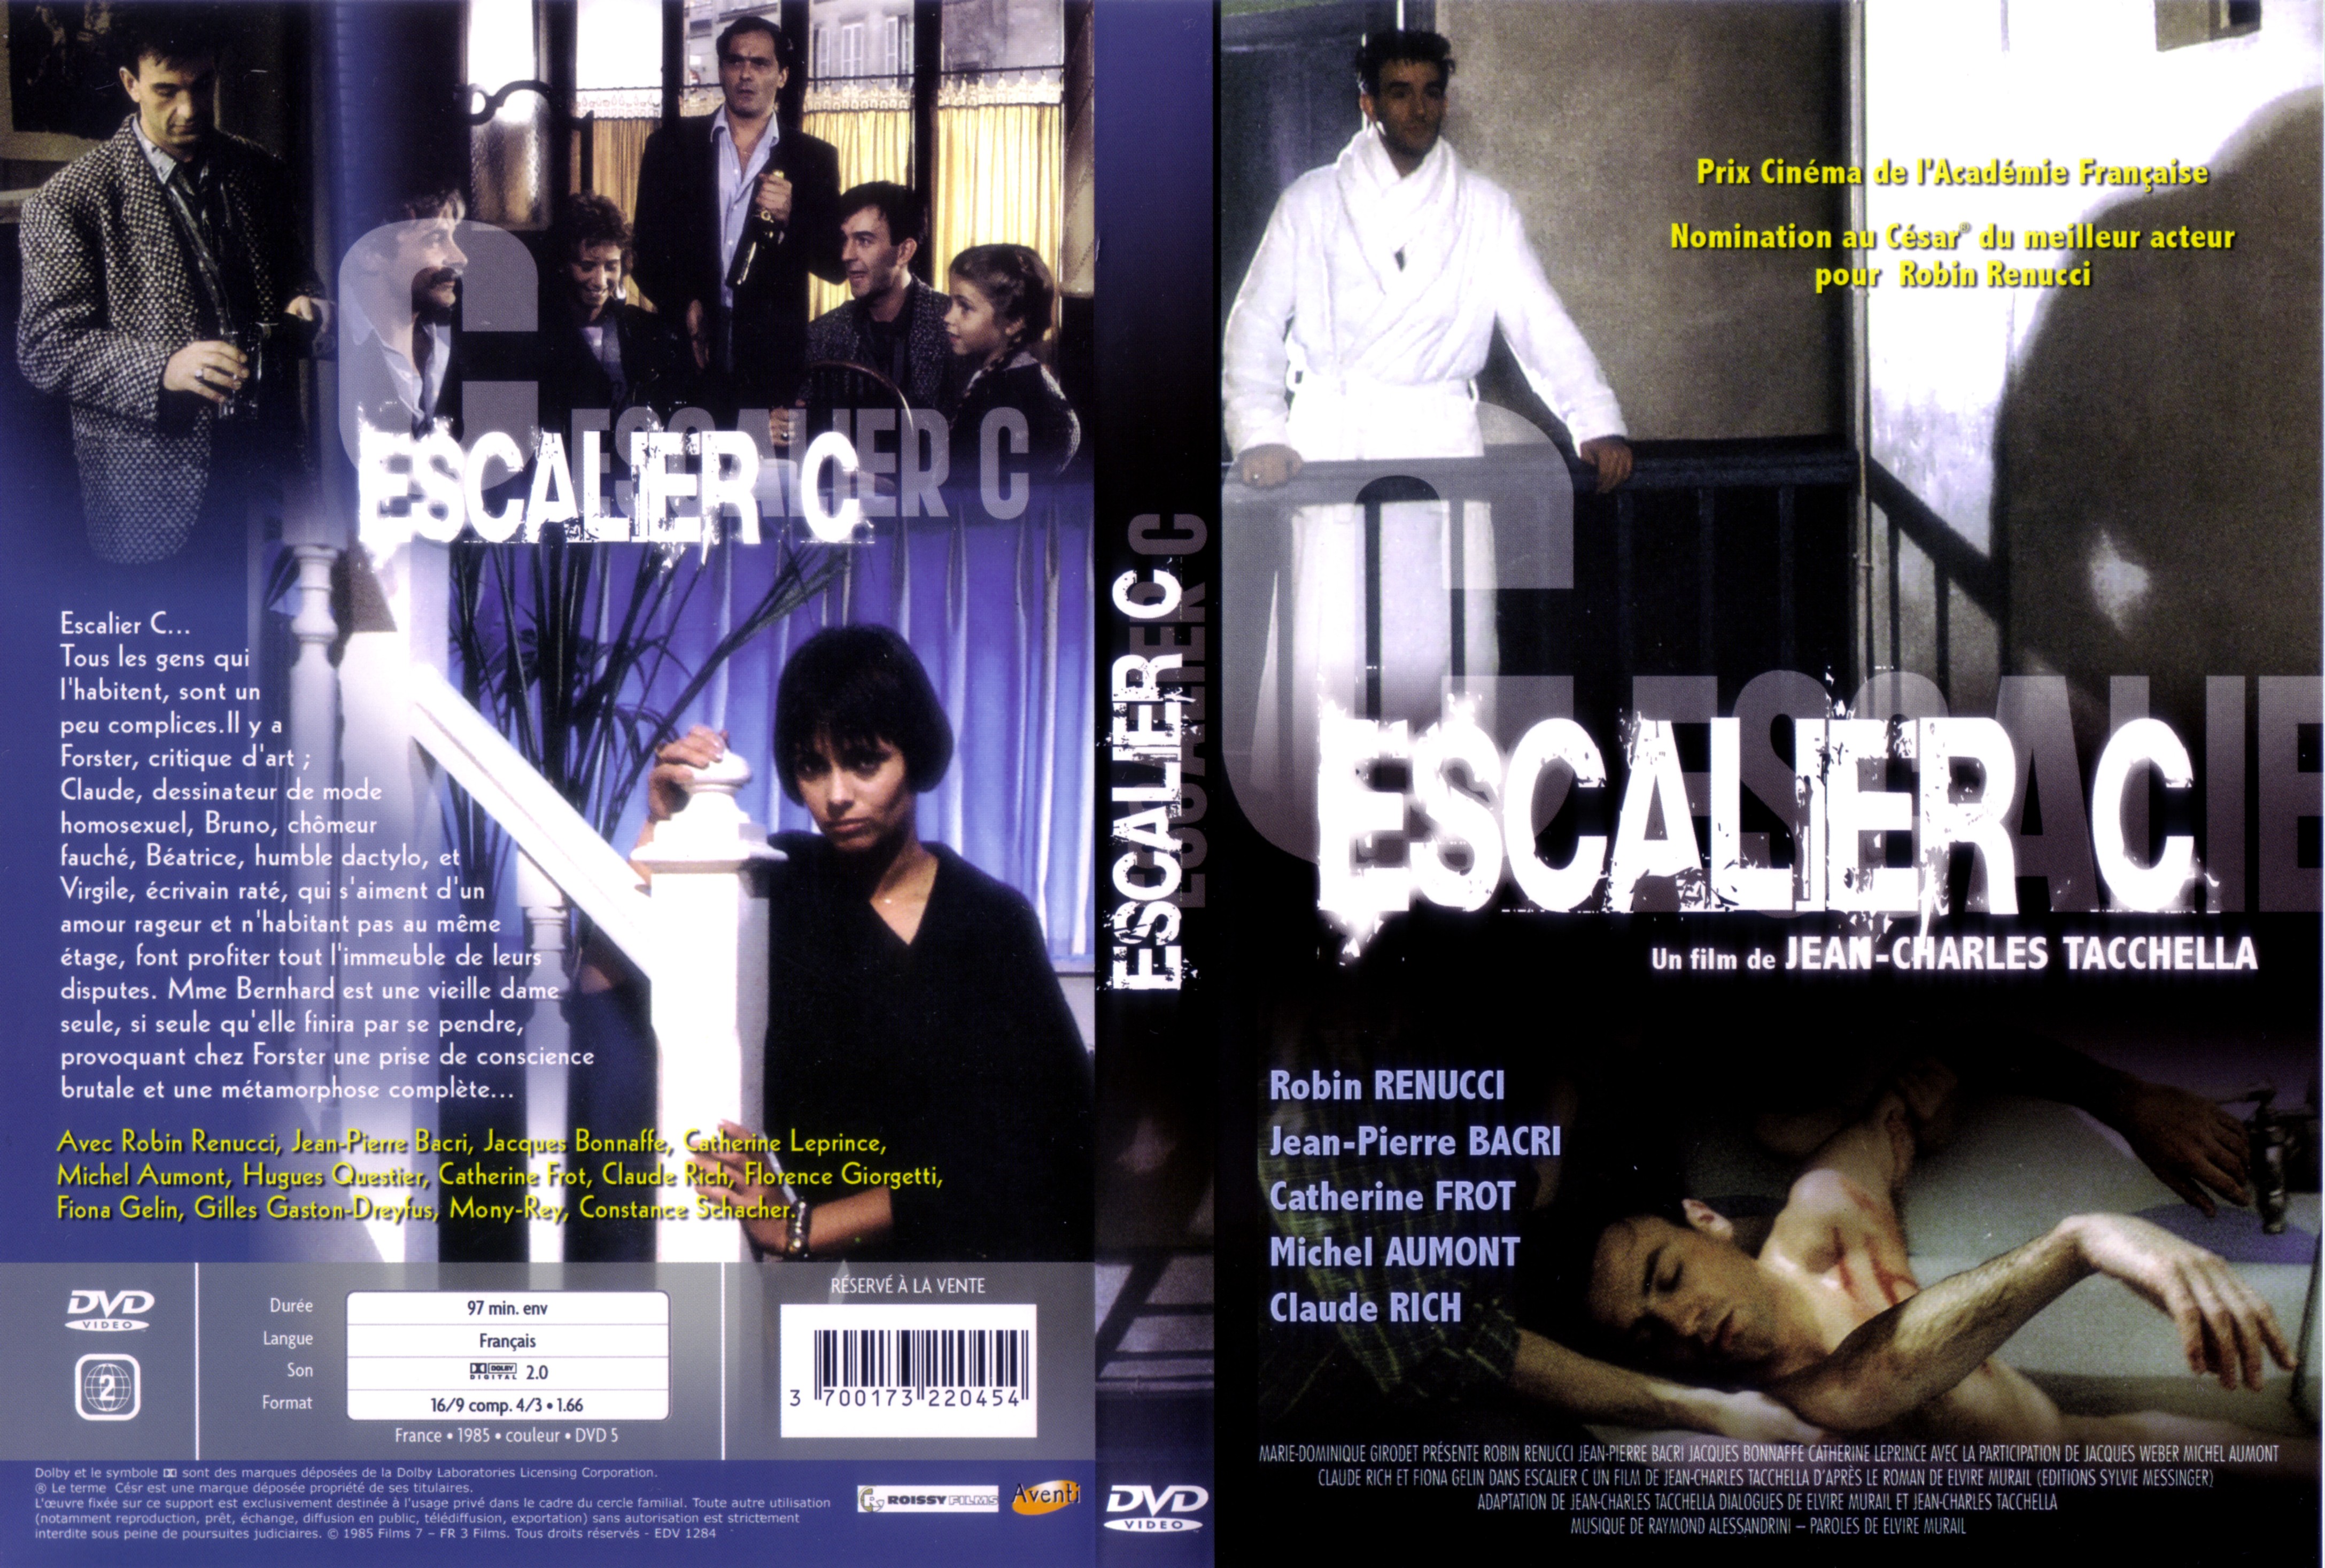 Jaquette DVD Escalier C